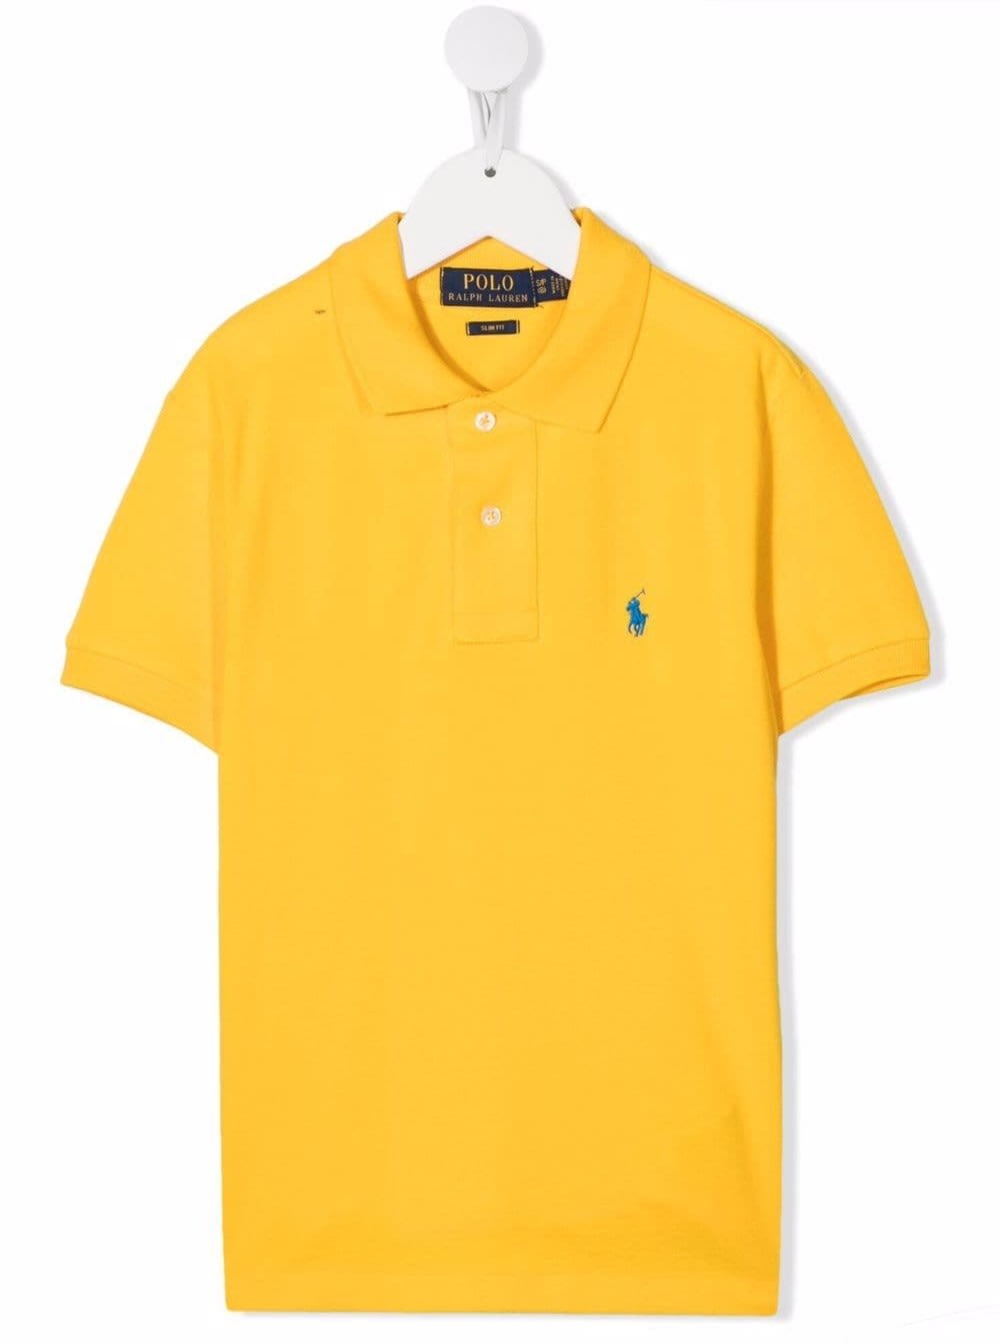 Polo Ralph Lauren Kids Boys Yellow Cotton Piquet Polo Shirt